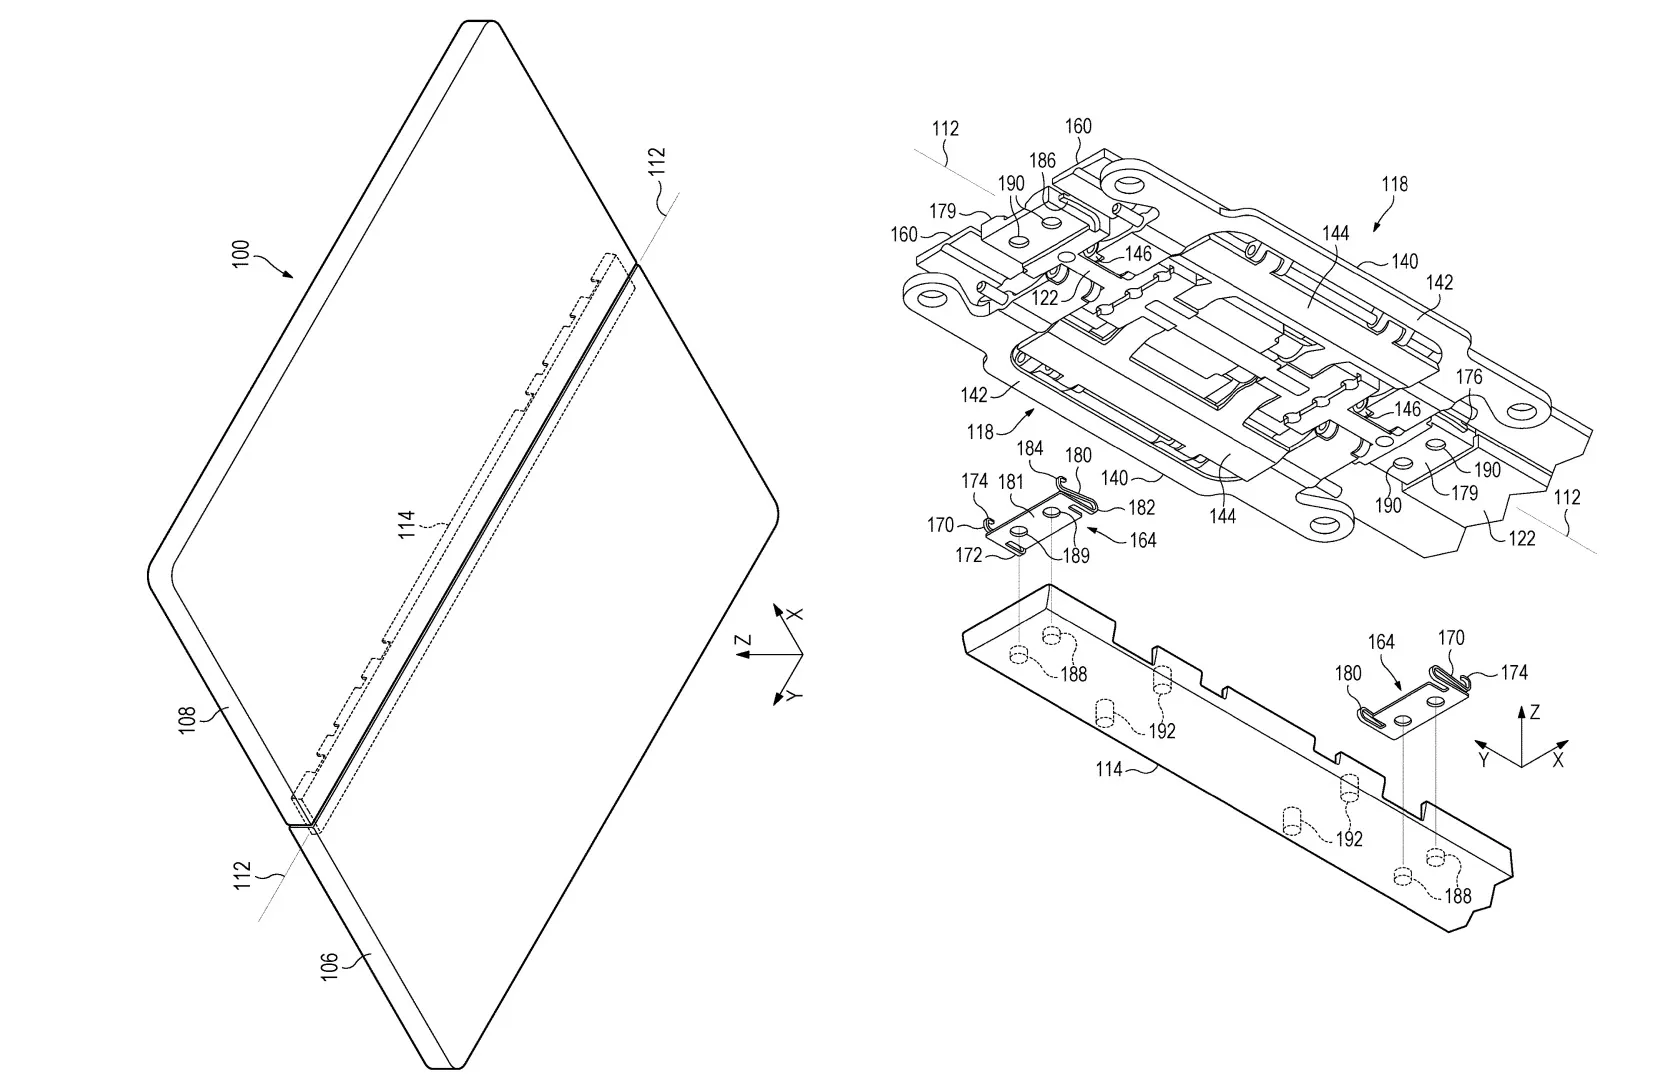 Brevet Surface Phone avec couvercle à plaque unique